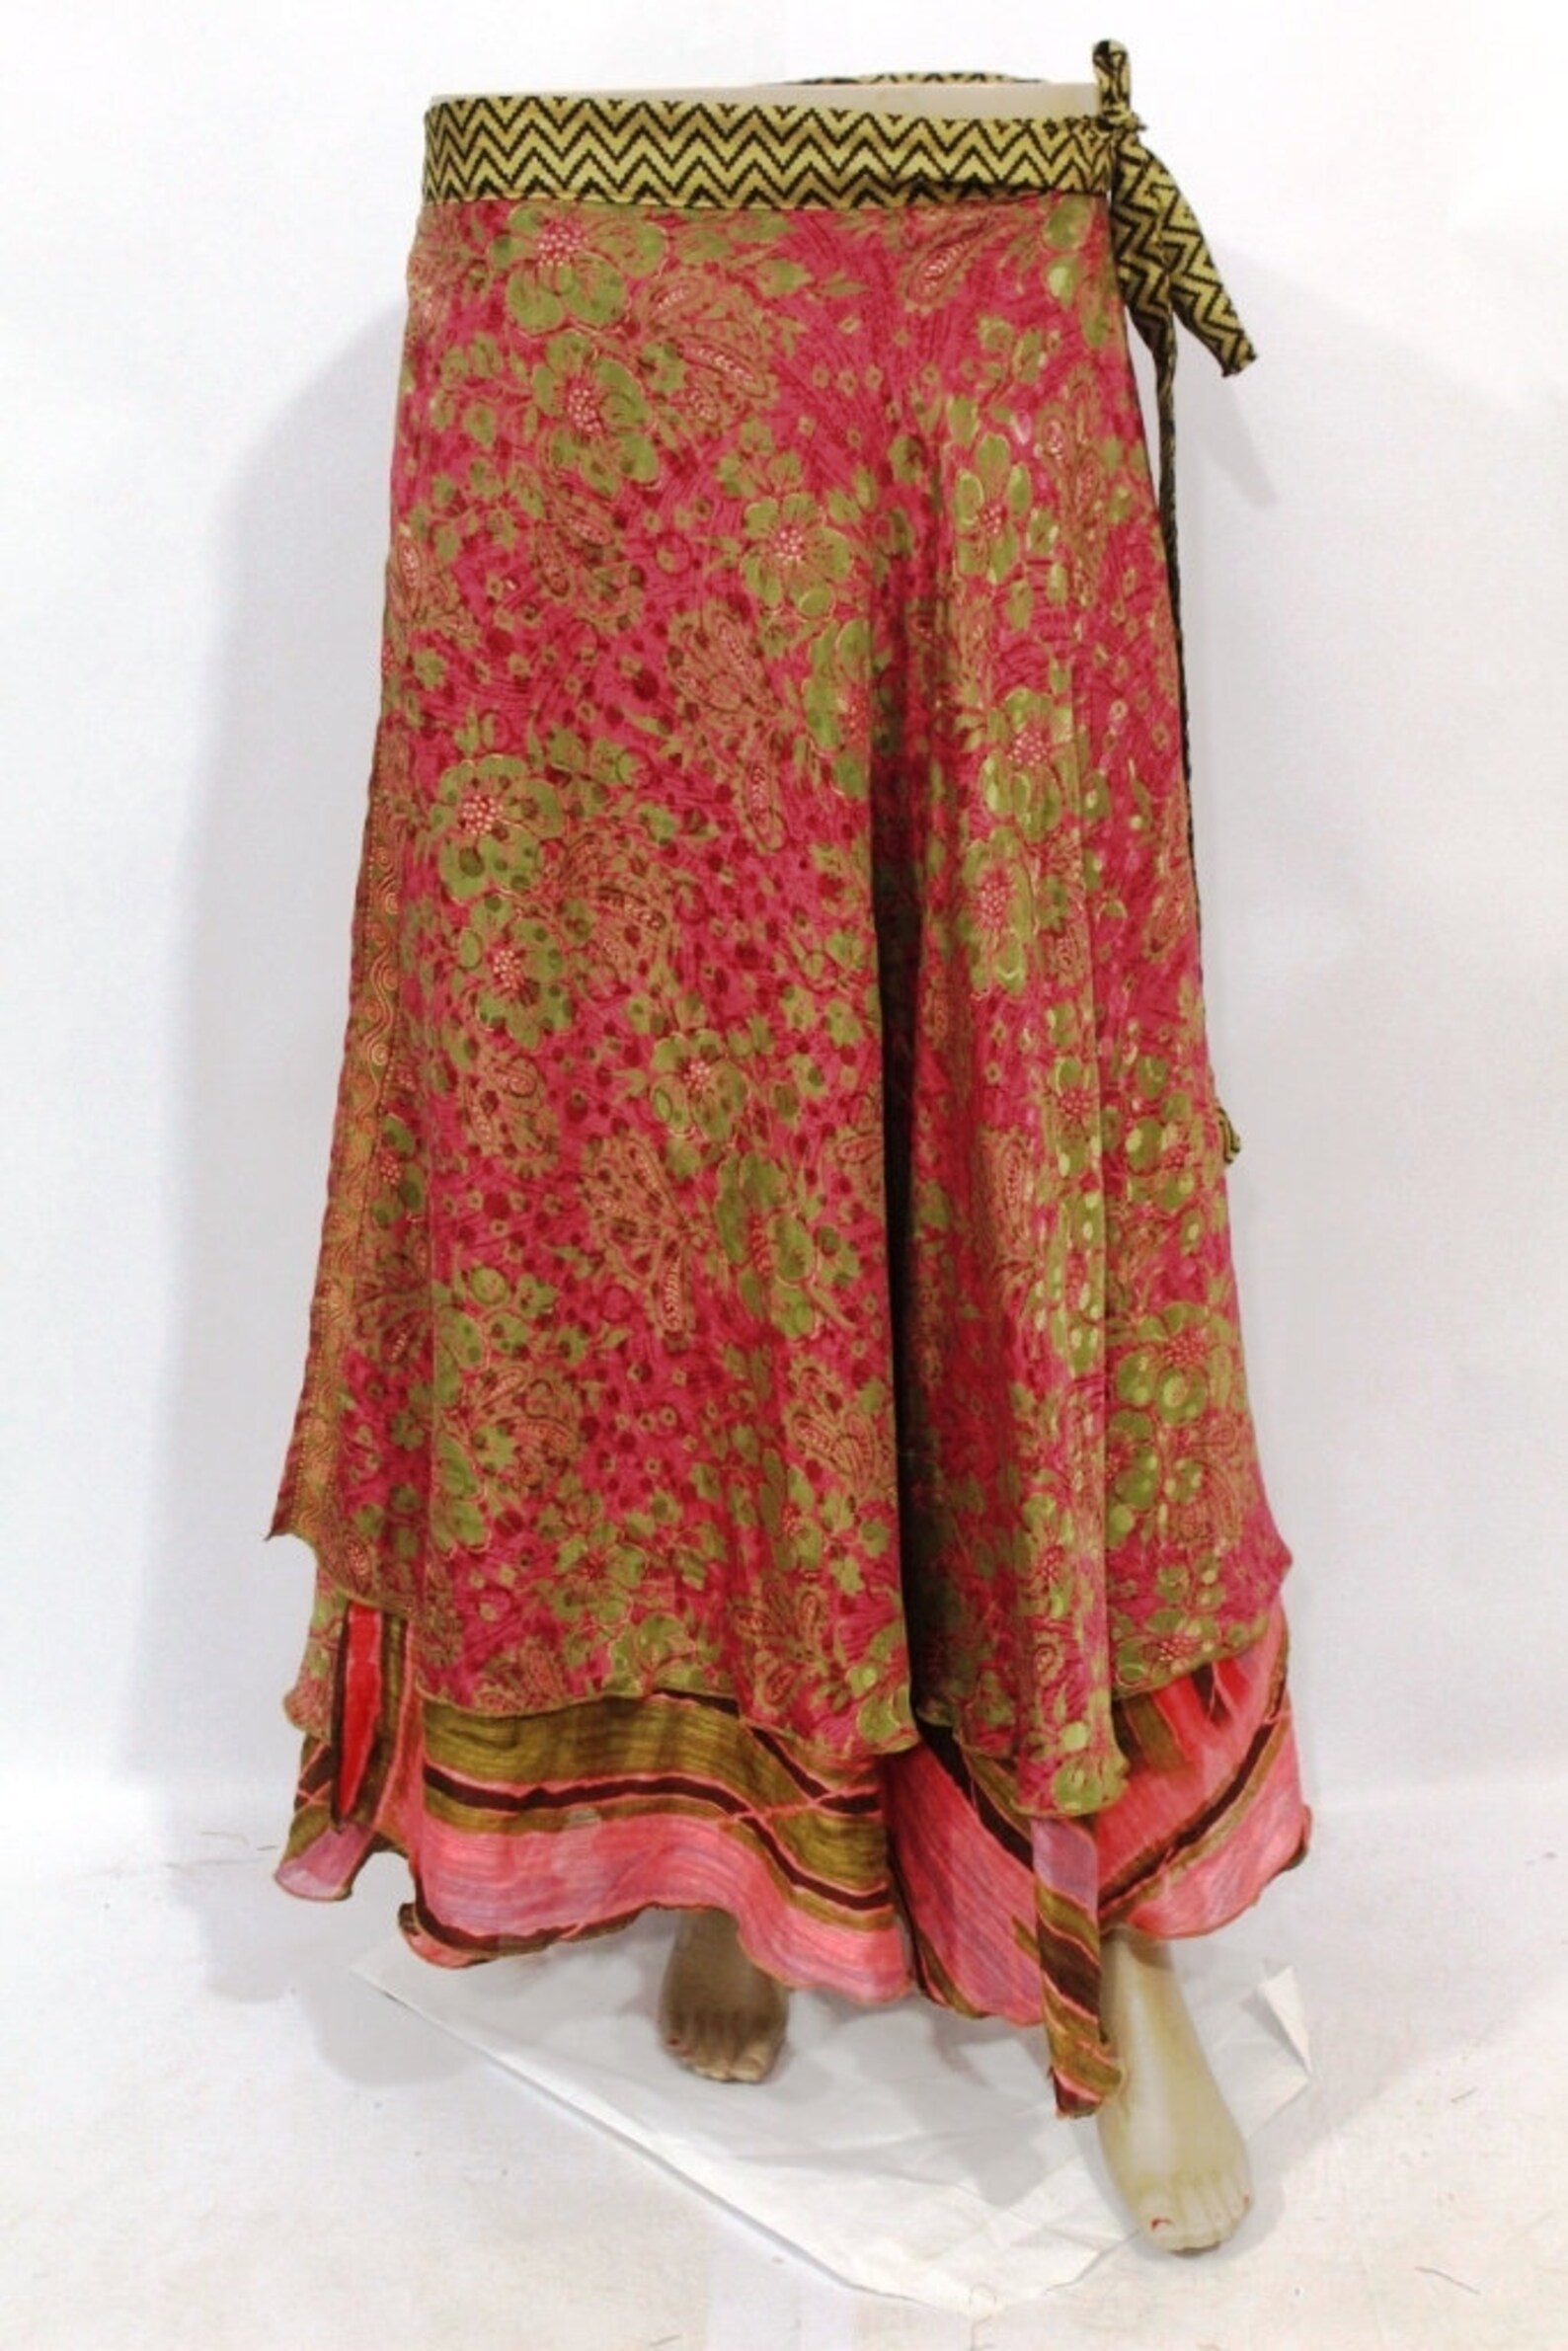 Reversible Long Magic Wrap Skirt Bohemian Two layer Silk Wrap | Etsy